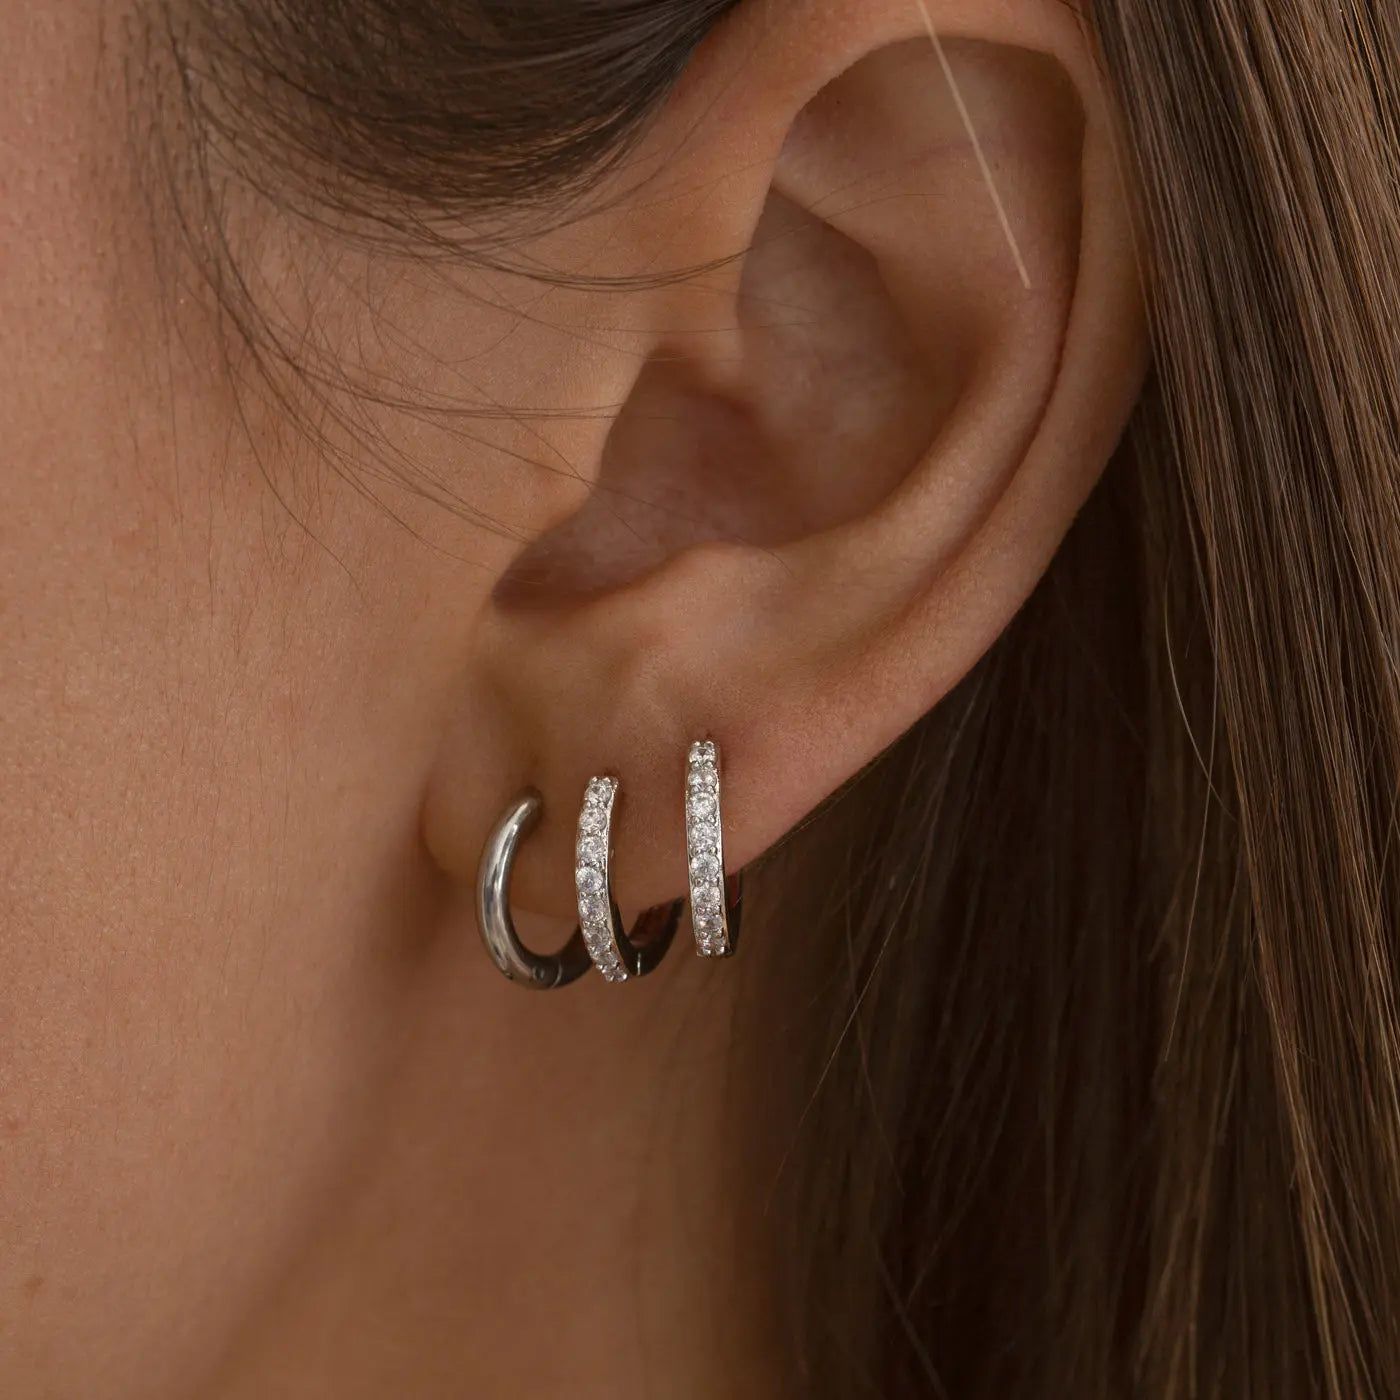 Harper - Hoop Earrings 12mm Stainless Steel